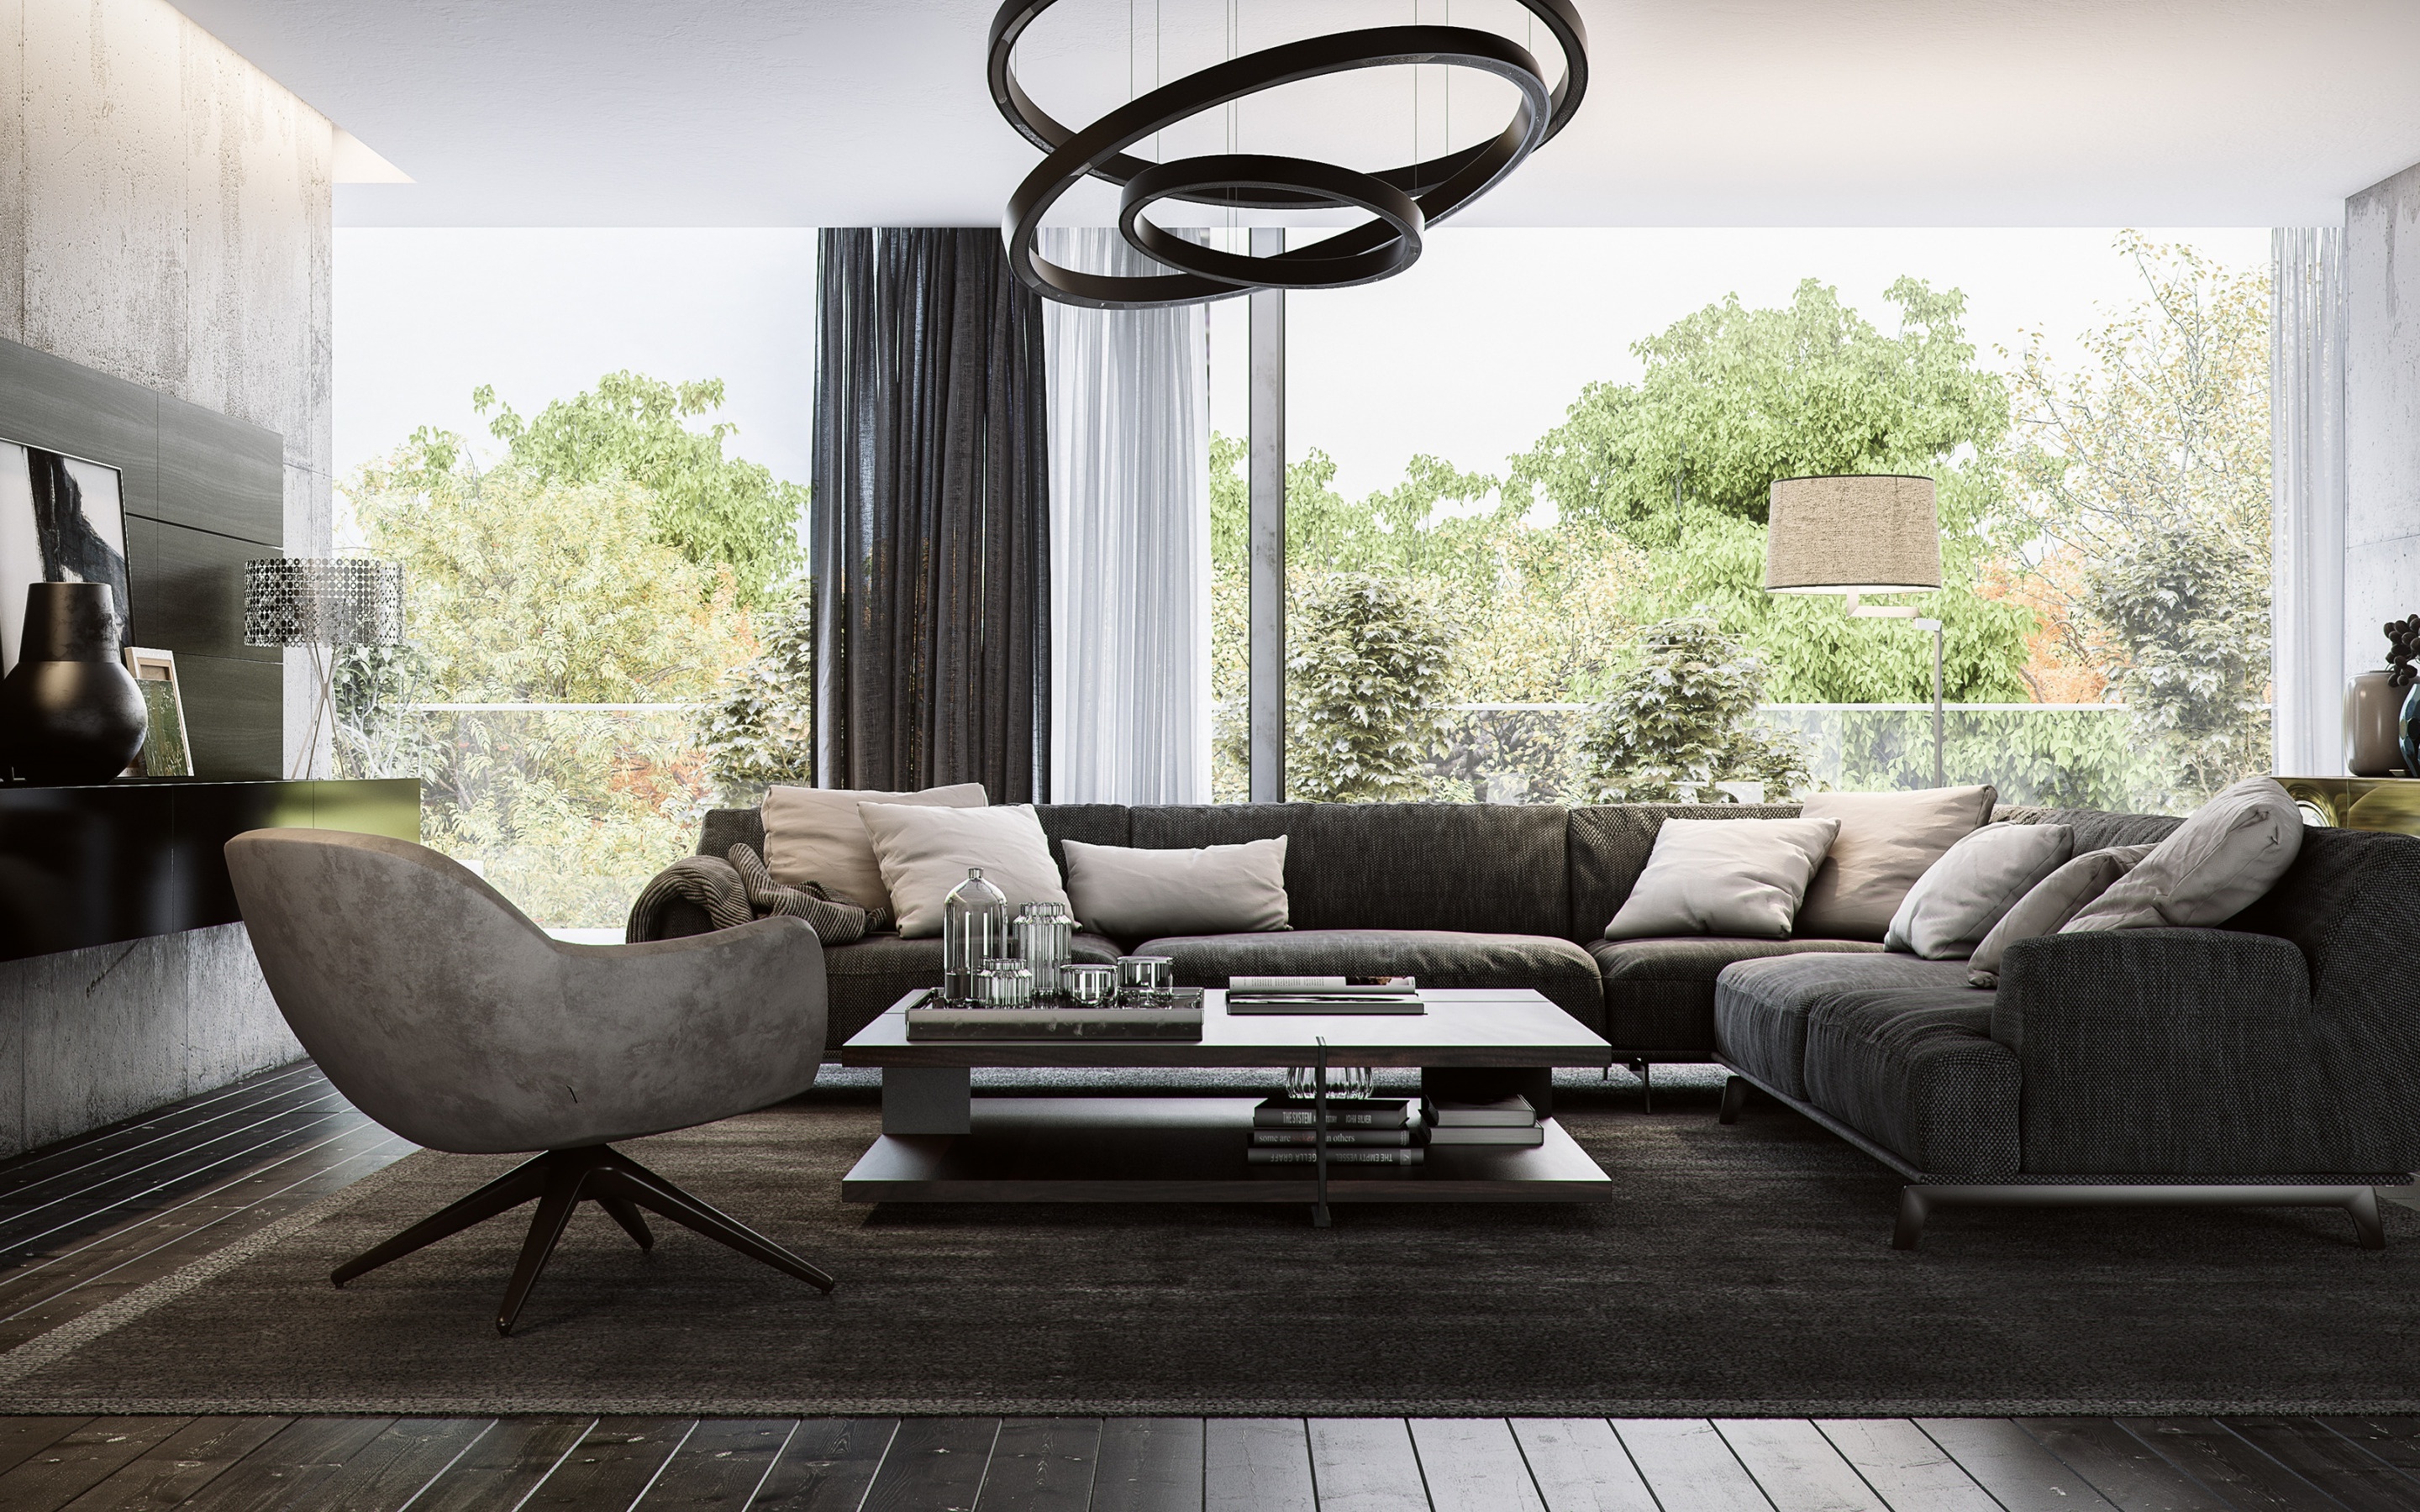 Stylish Interior Design, Living Room, Loft Style, Gray - Vardagsrum Med Mörk Soffa - HD Wallpaper 